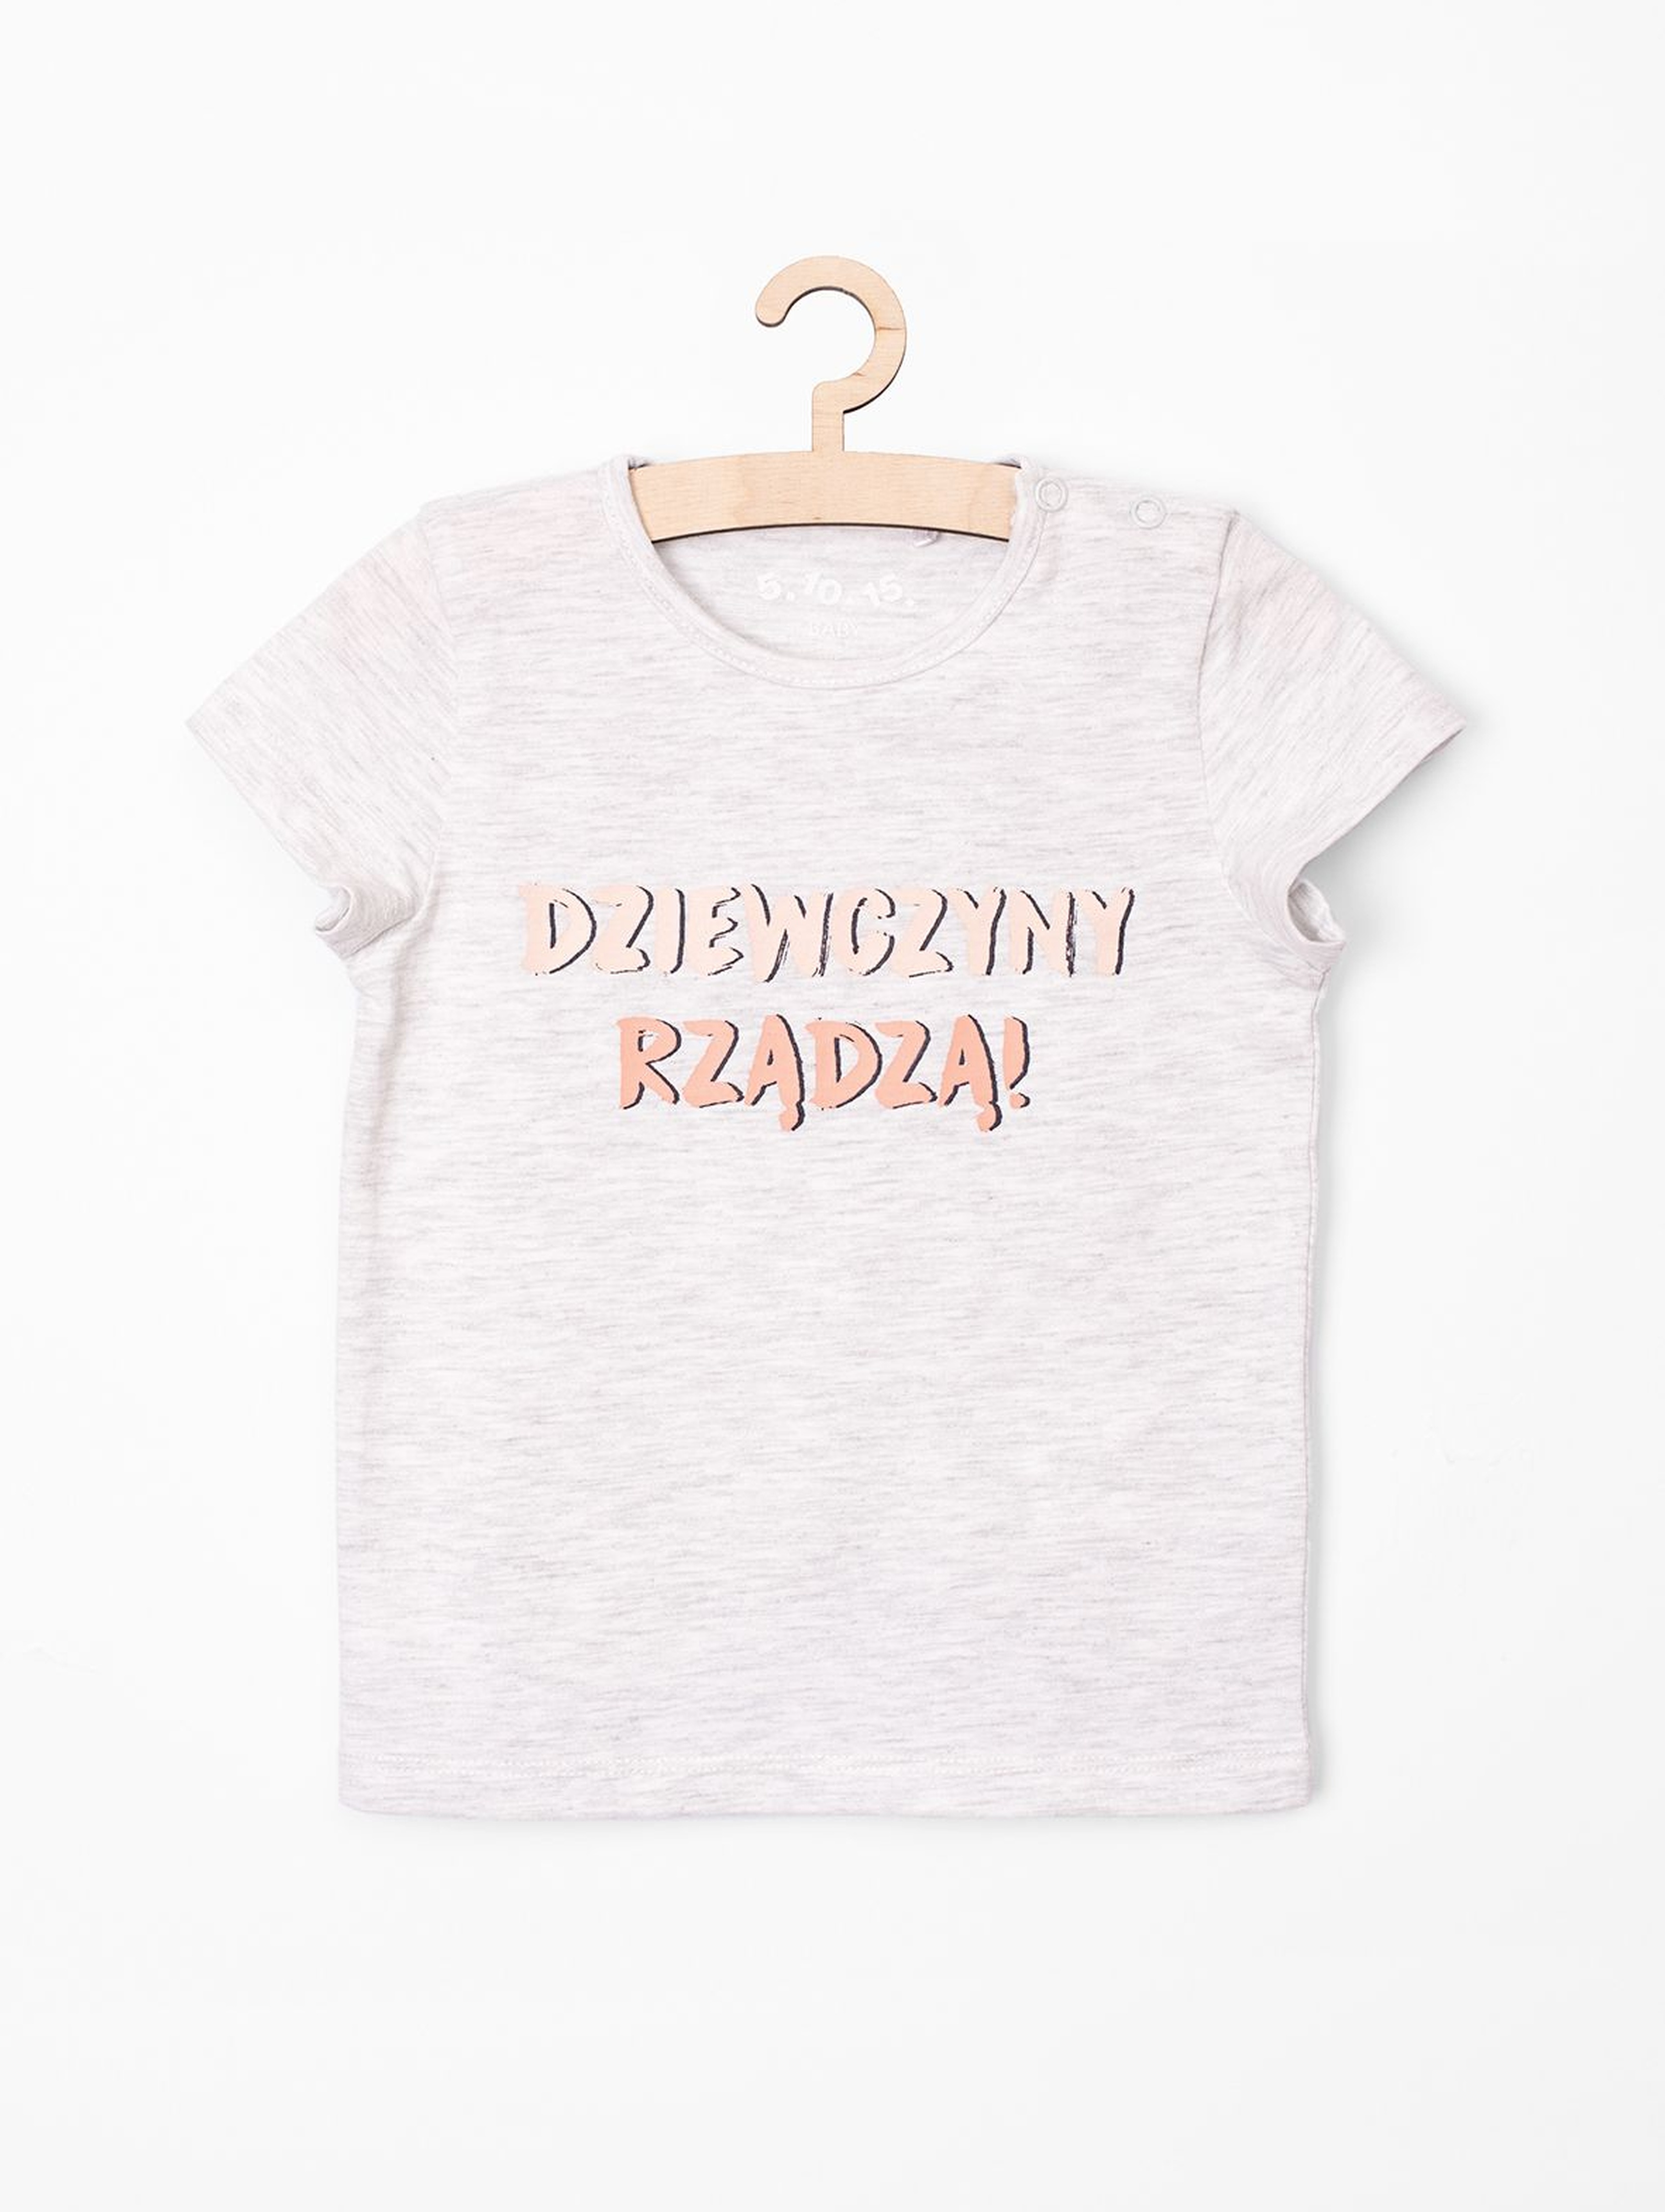 T-shirt niemowlęcy - Dziewczyny rządzą